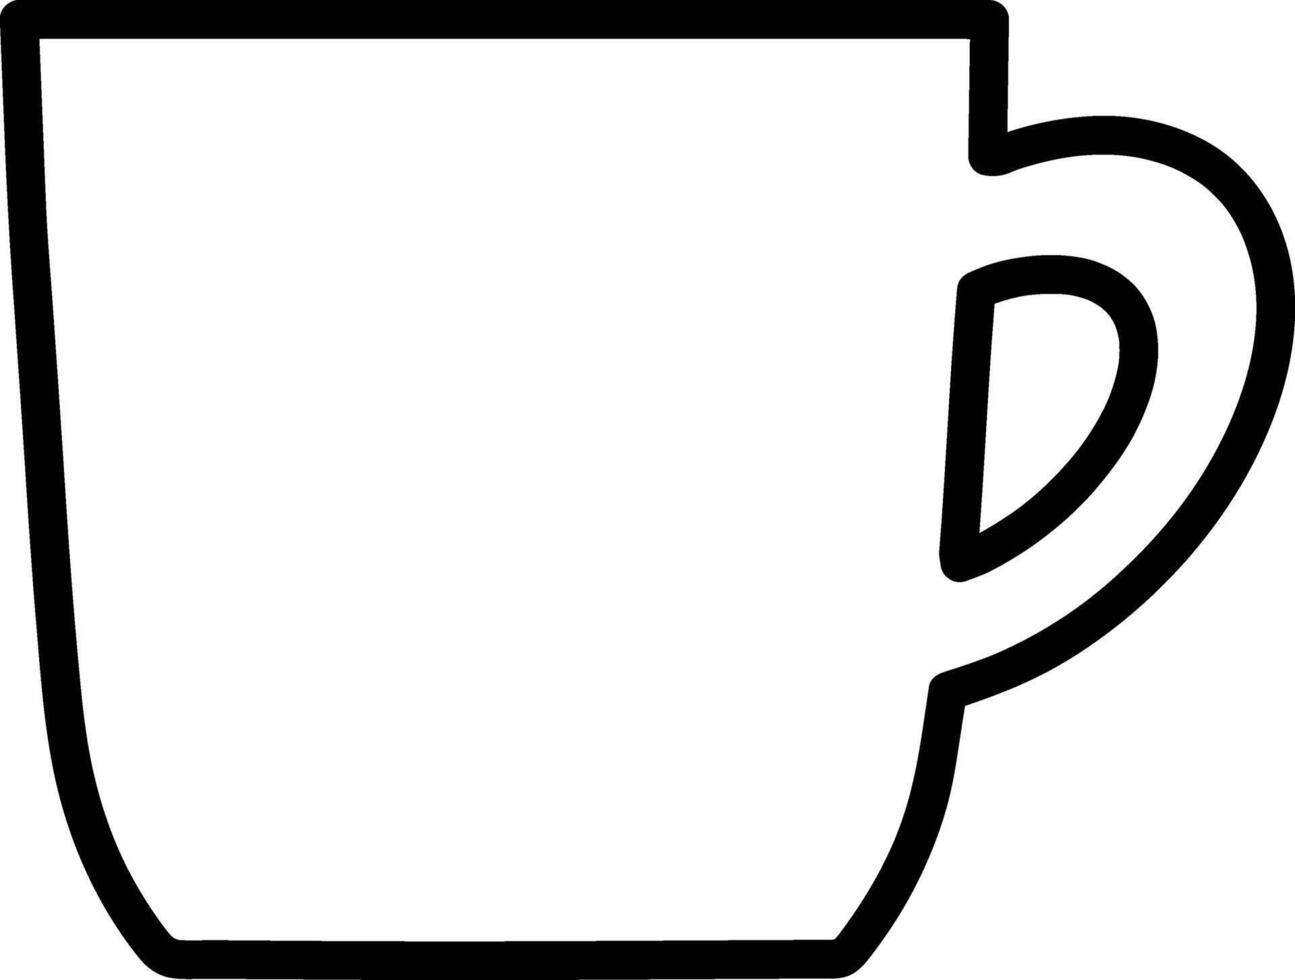 garabatear café taza té clipart bosquejo vector ilustración